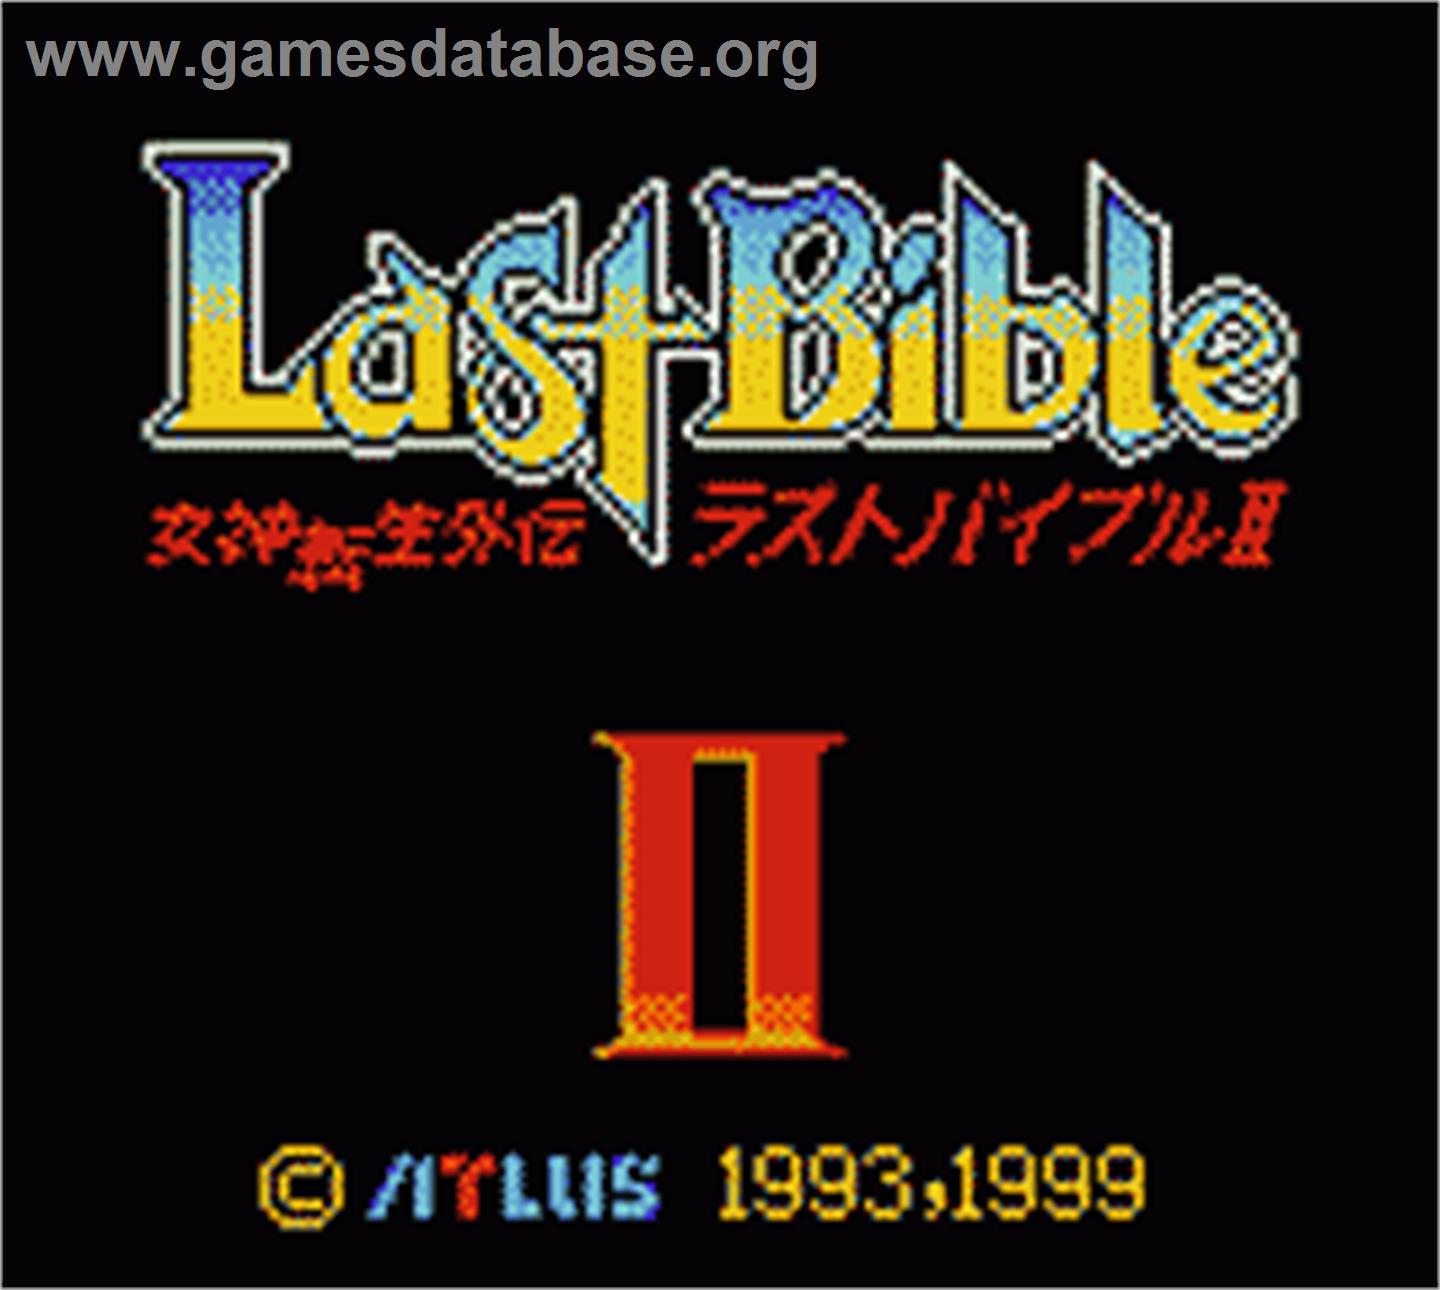 Megami Tensei Gaiden: Last Bible 2 - Nintendo Game Boy Color - Artwork - Title Screen